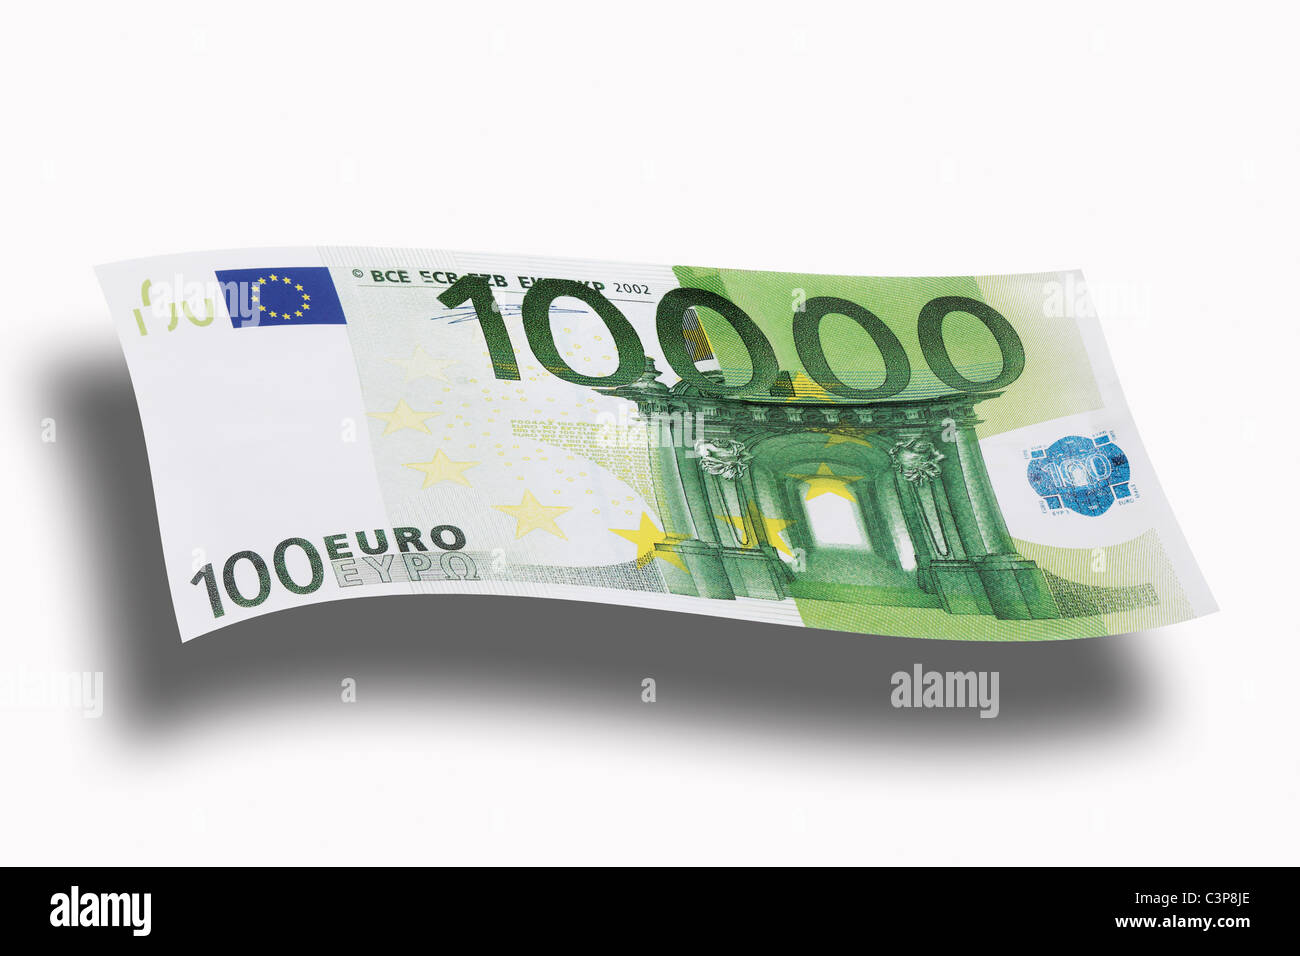 10000 Euro note on ehite background, close-up Stock Photo